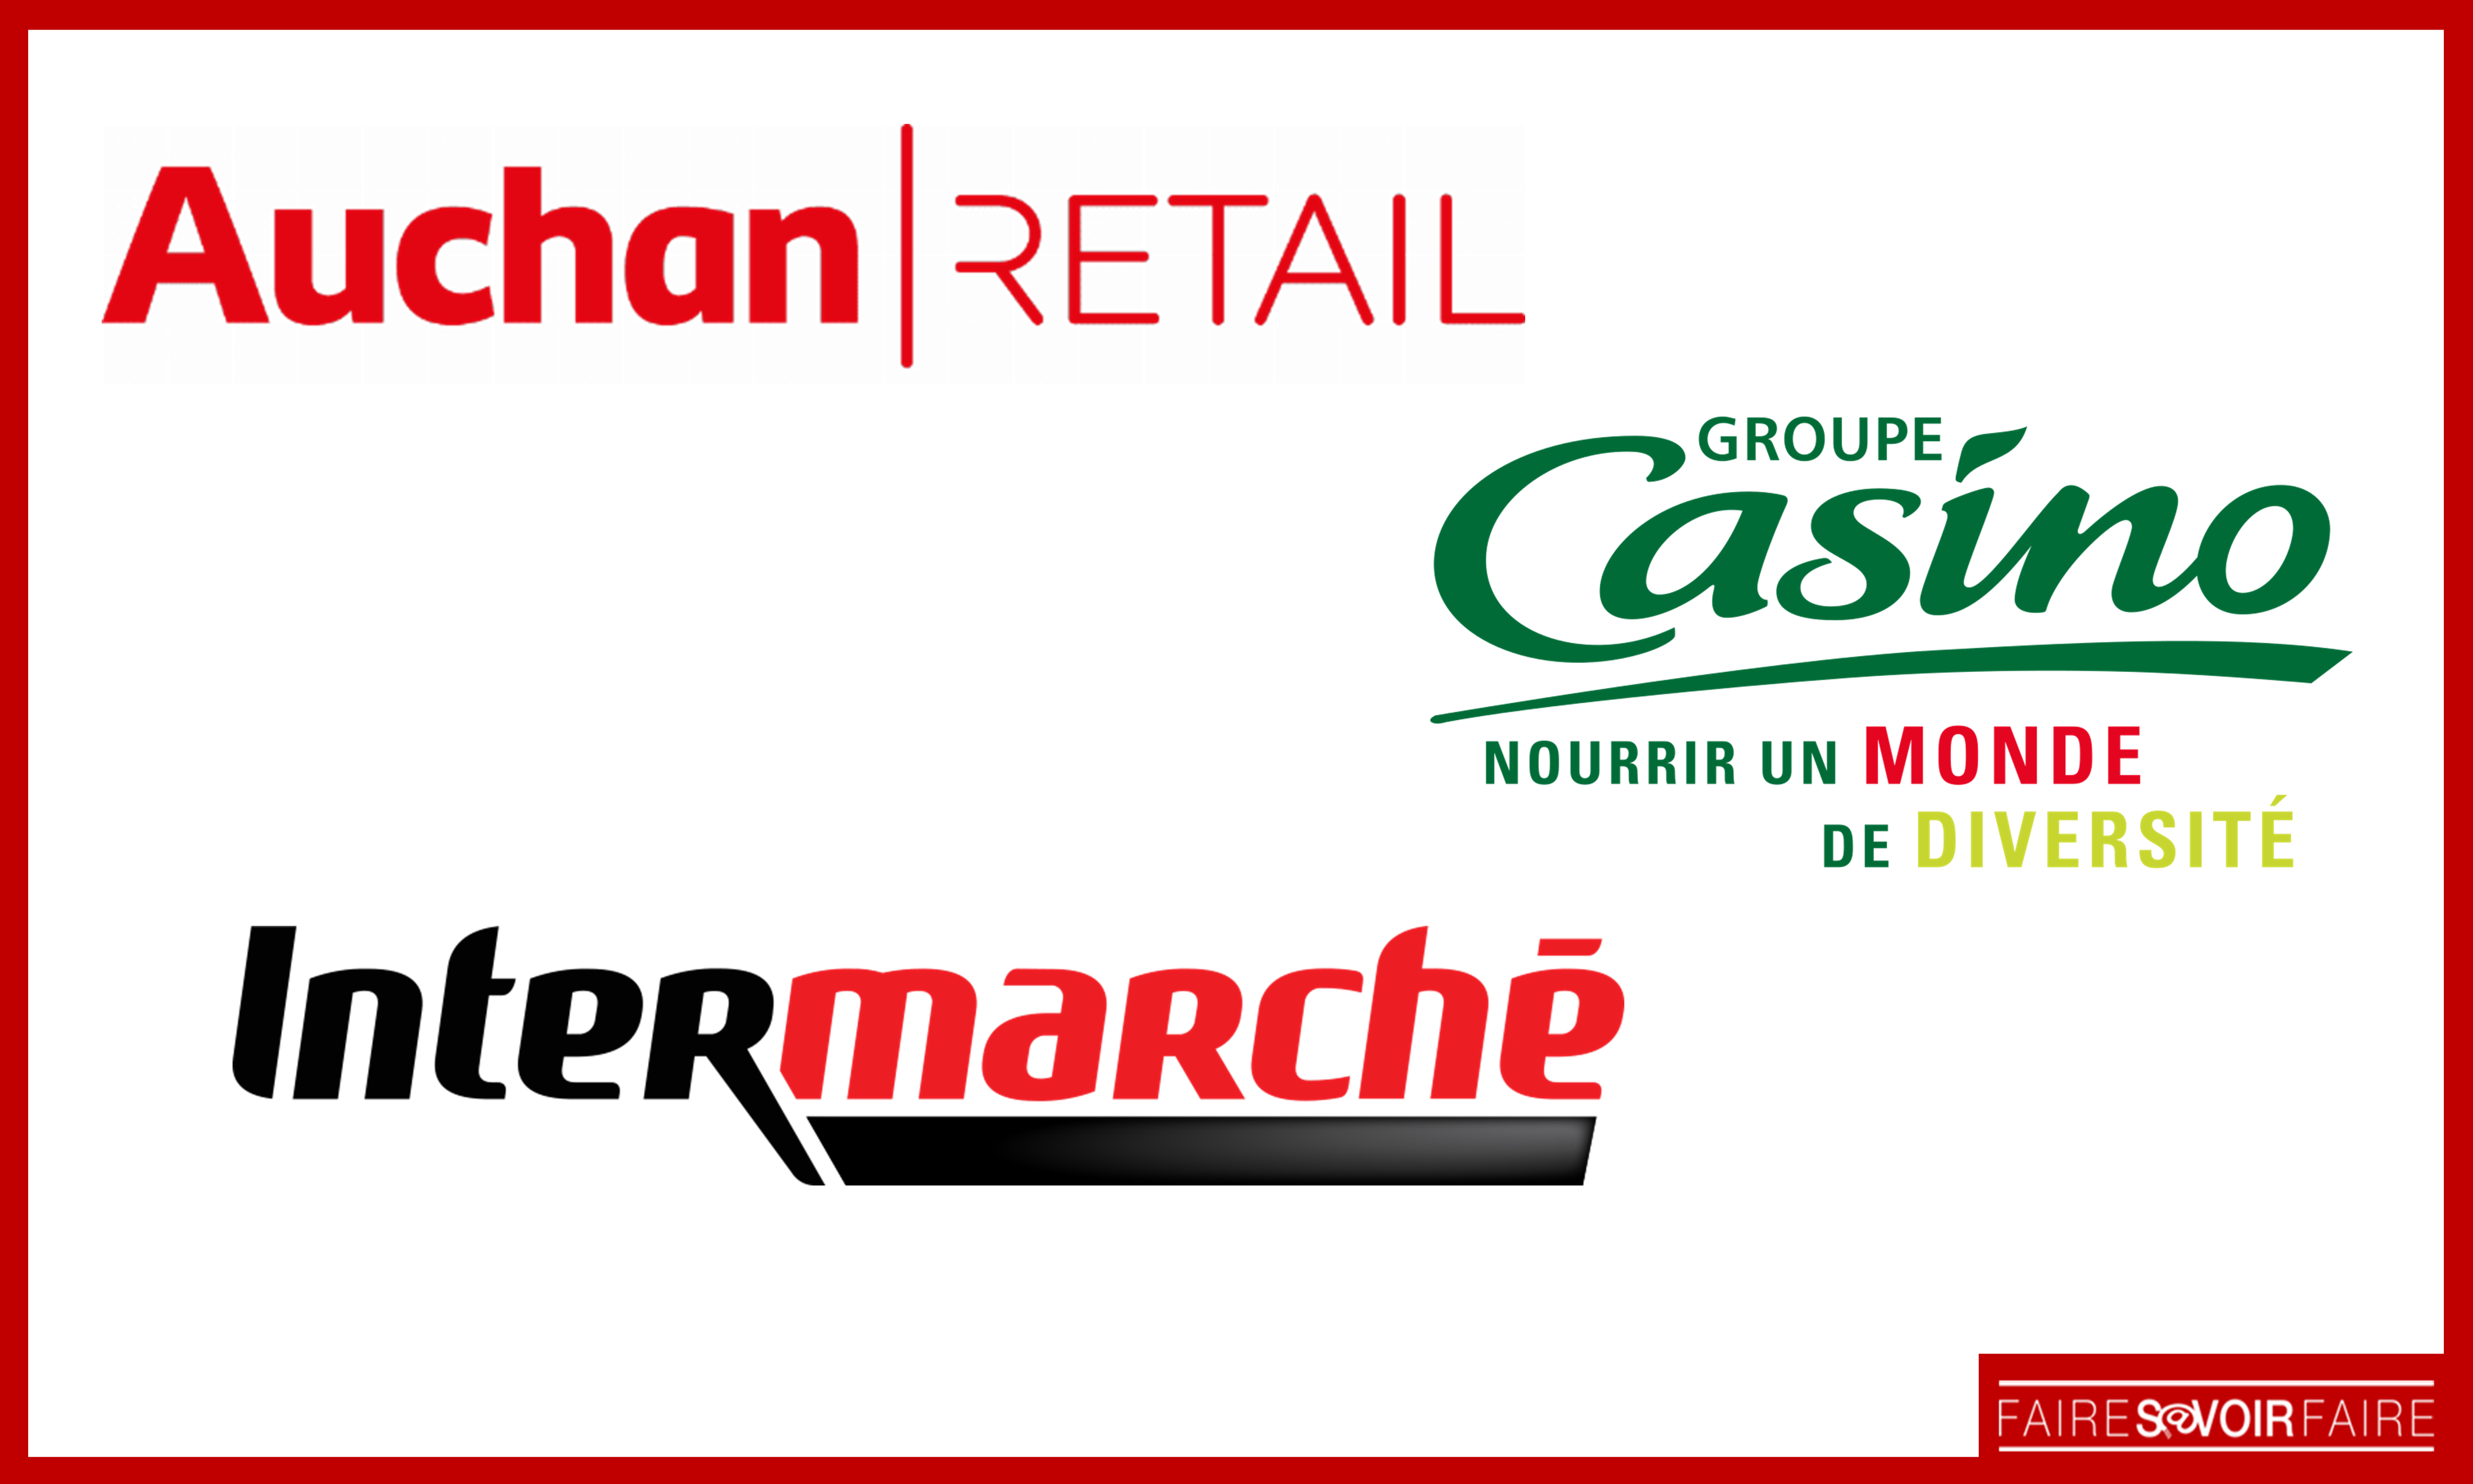 Intermarché, Auchan et Casino s’associent pour un partenariat à long terme